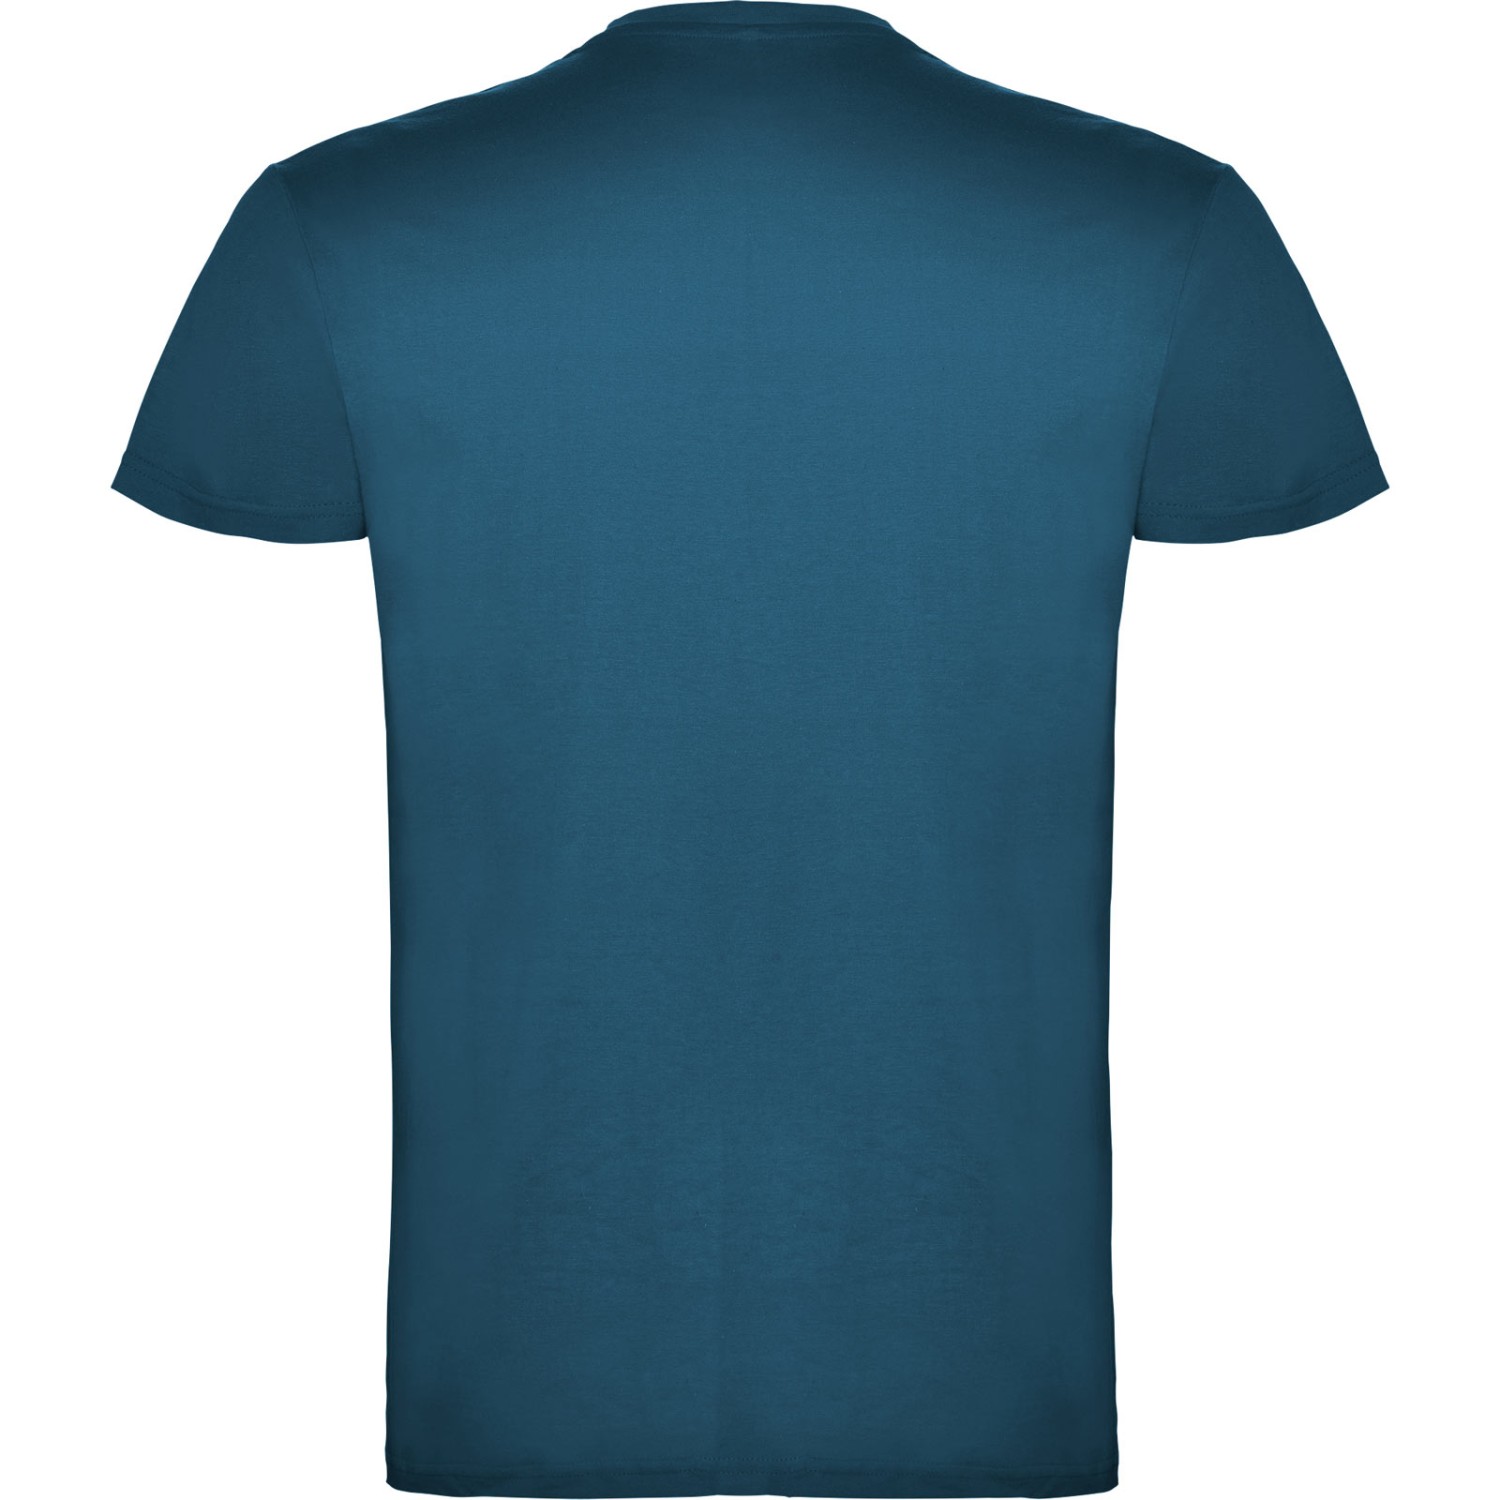 3. Foto T-Shirt BEAGLE Kurzarm Rundhals mit Druck (Farbe: moonlight blau Größe: S)